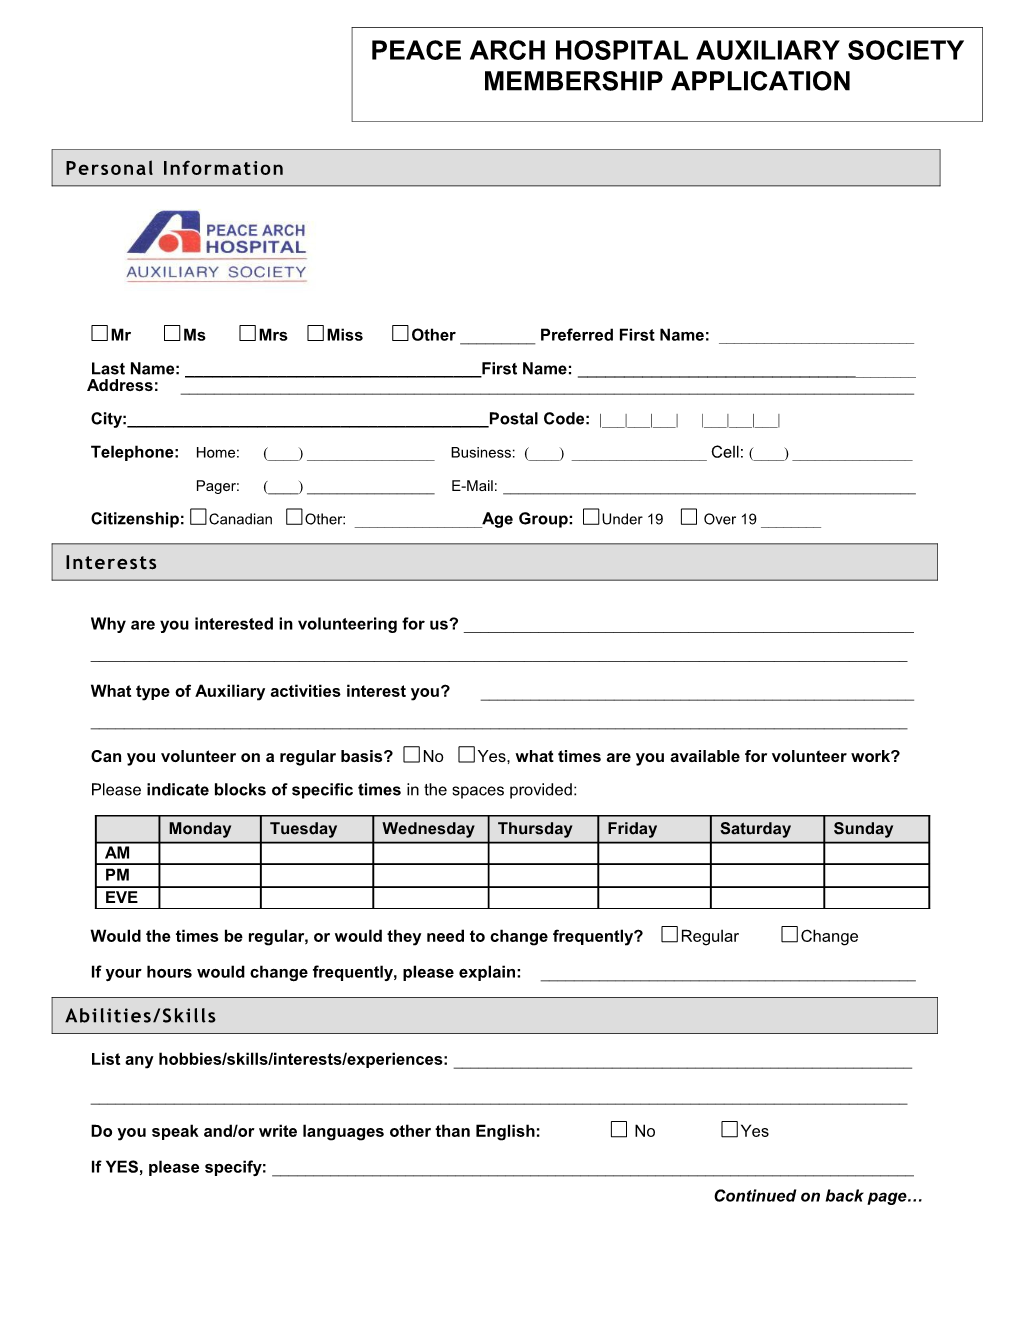 Fraser Health Application Form